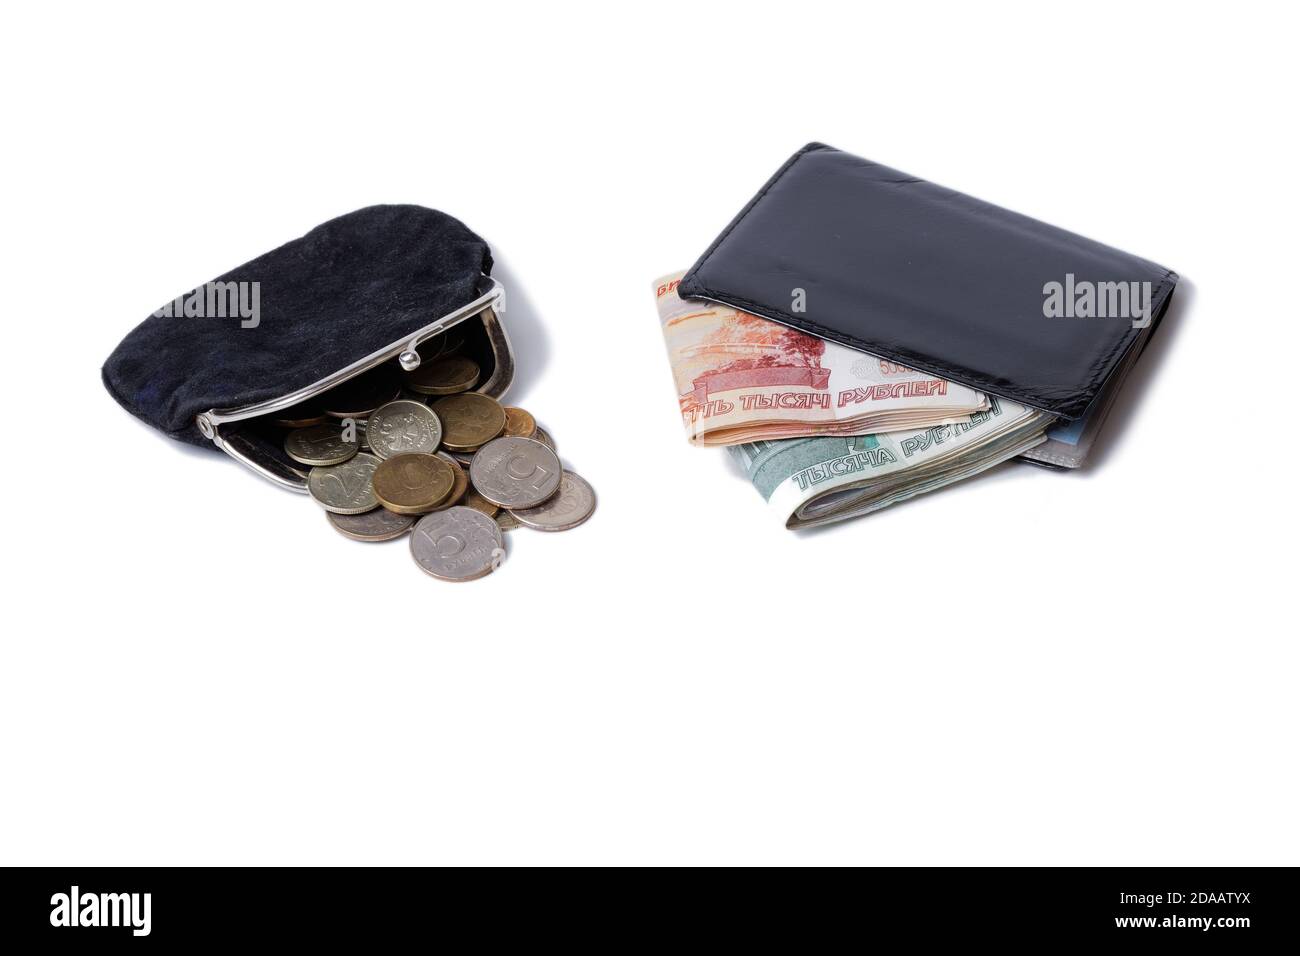 Bolso con monedas y billetera con efectivo aislado en blanco Foto de stock